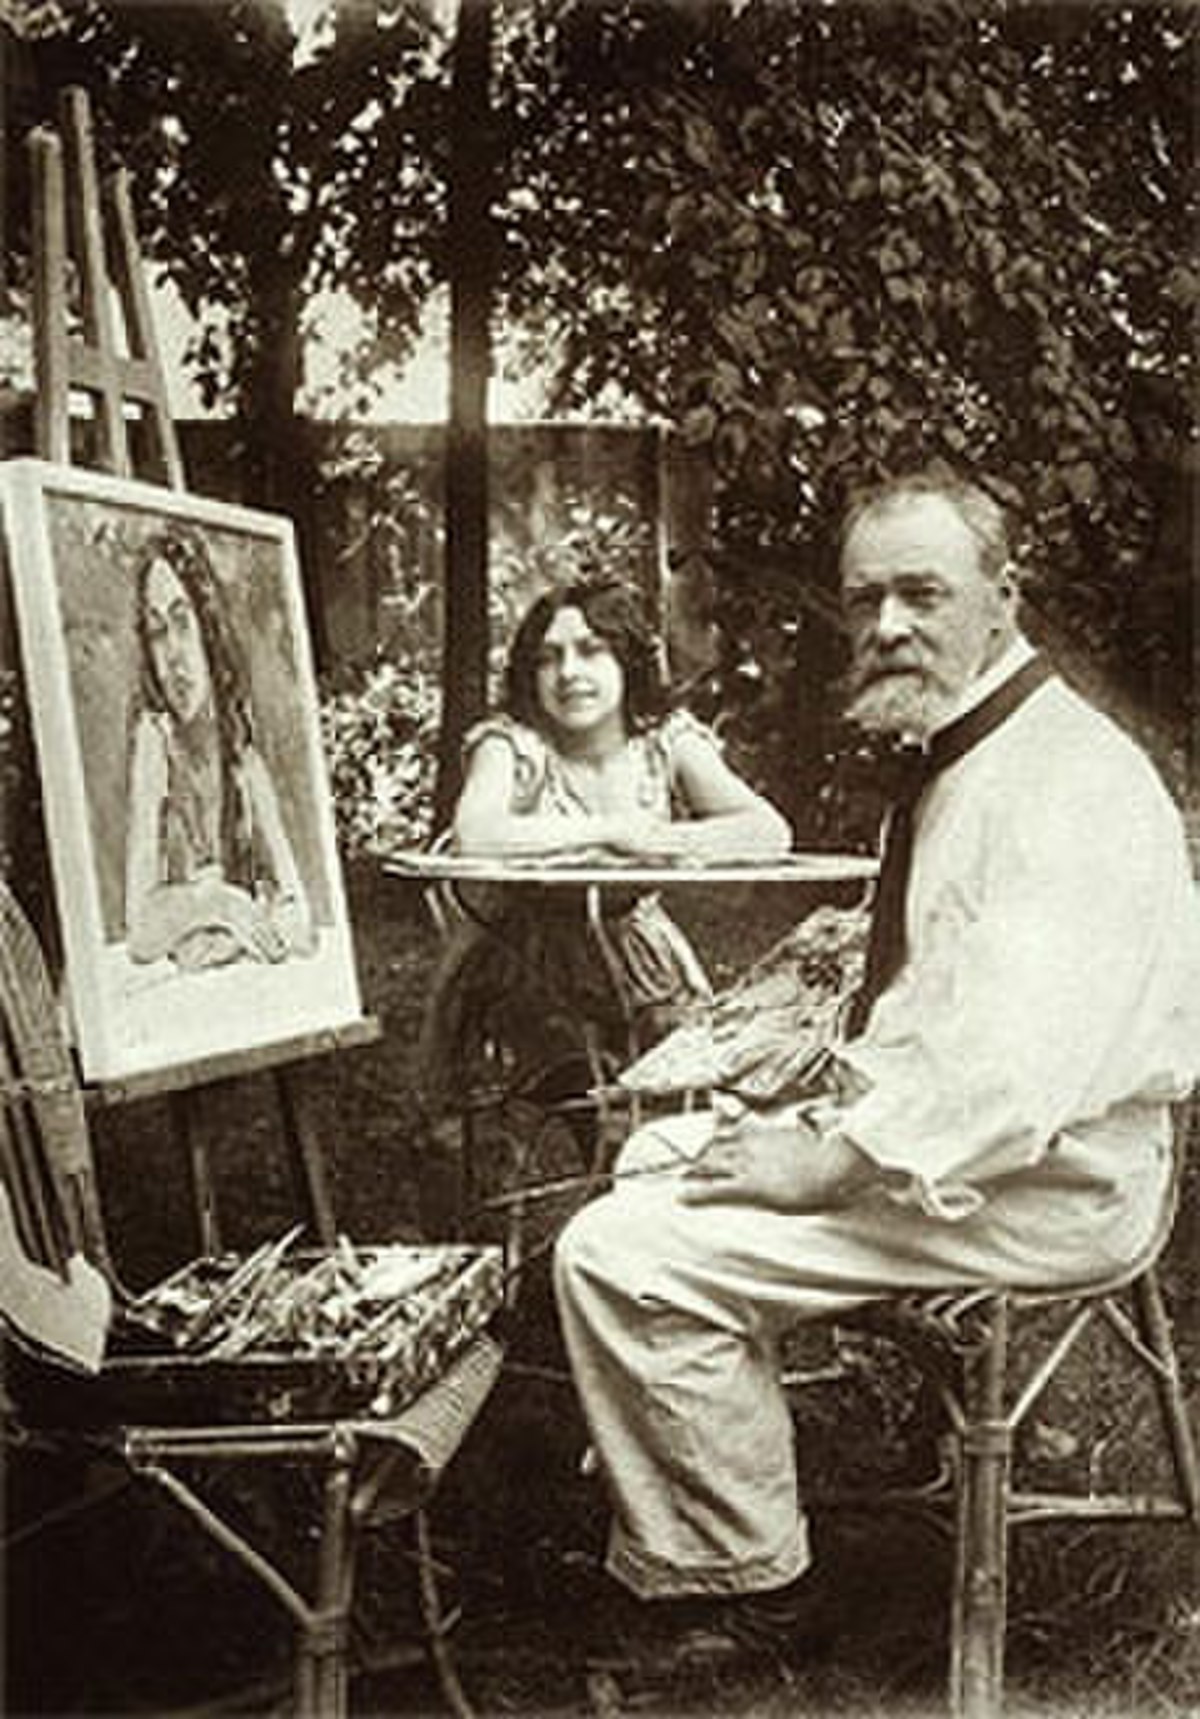 Le peintre suisse Ferdinand Hodler en 1916, en train de peindre, à l'extérieur.